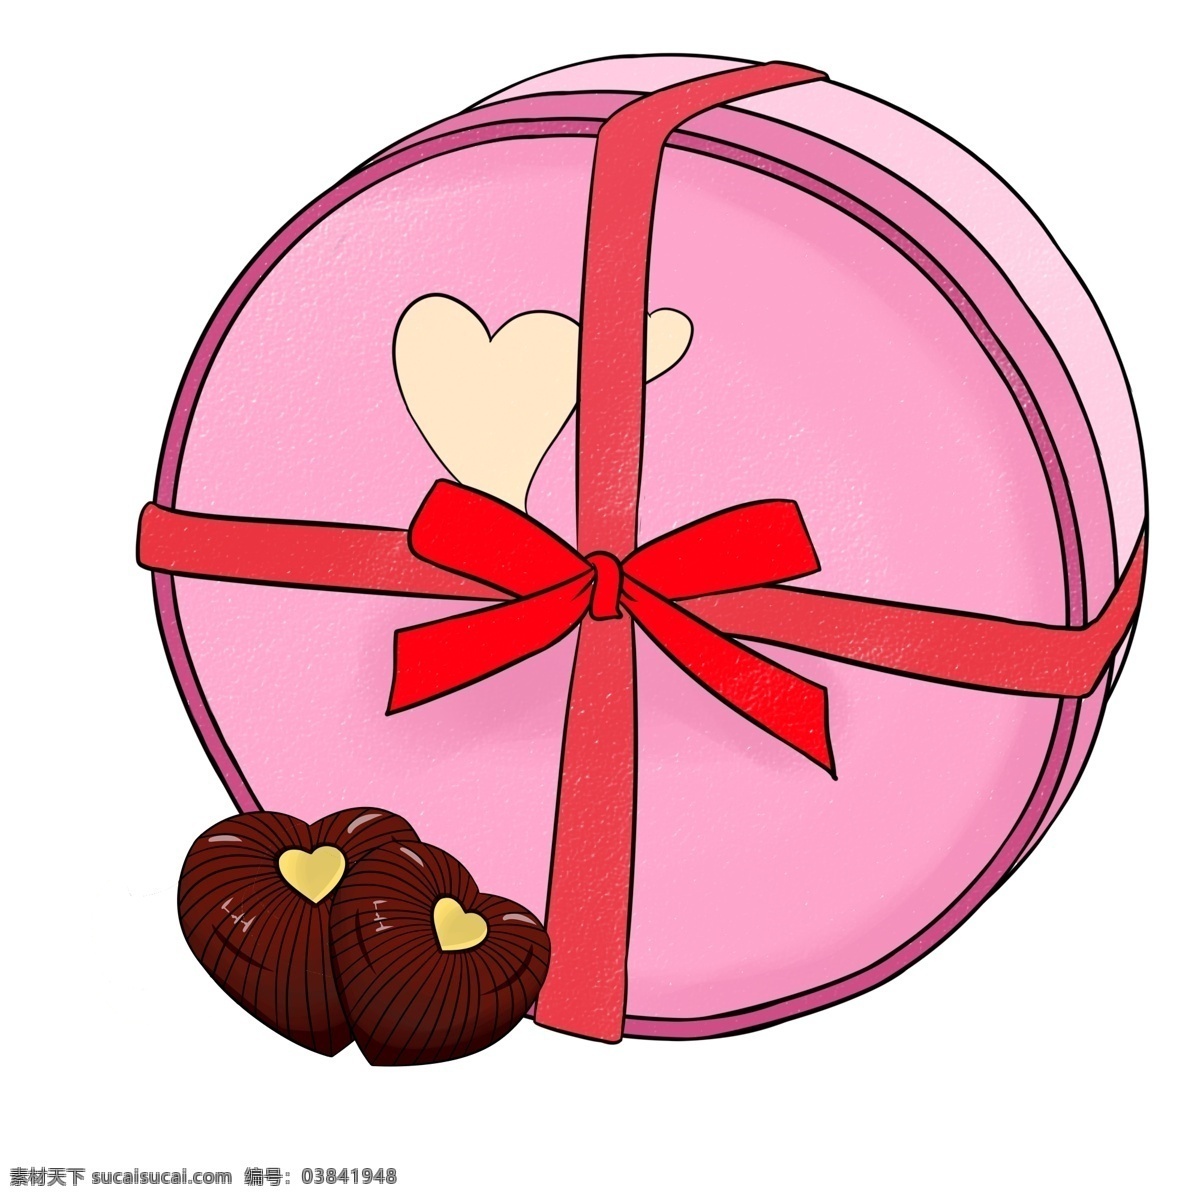 盒装 爱心 巧克力 插画 盒装巧克力 情人节礼物 爱心巧克力 粉色 圆形 礼物 盒 红色 丝带 蝴蝶结